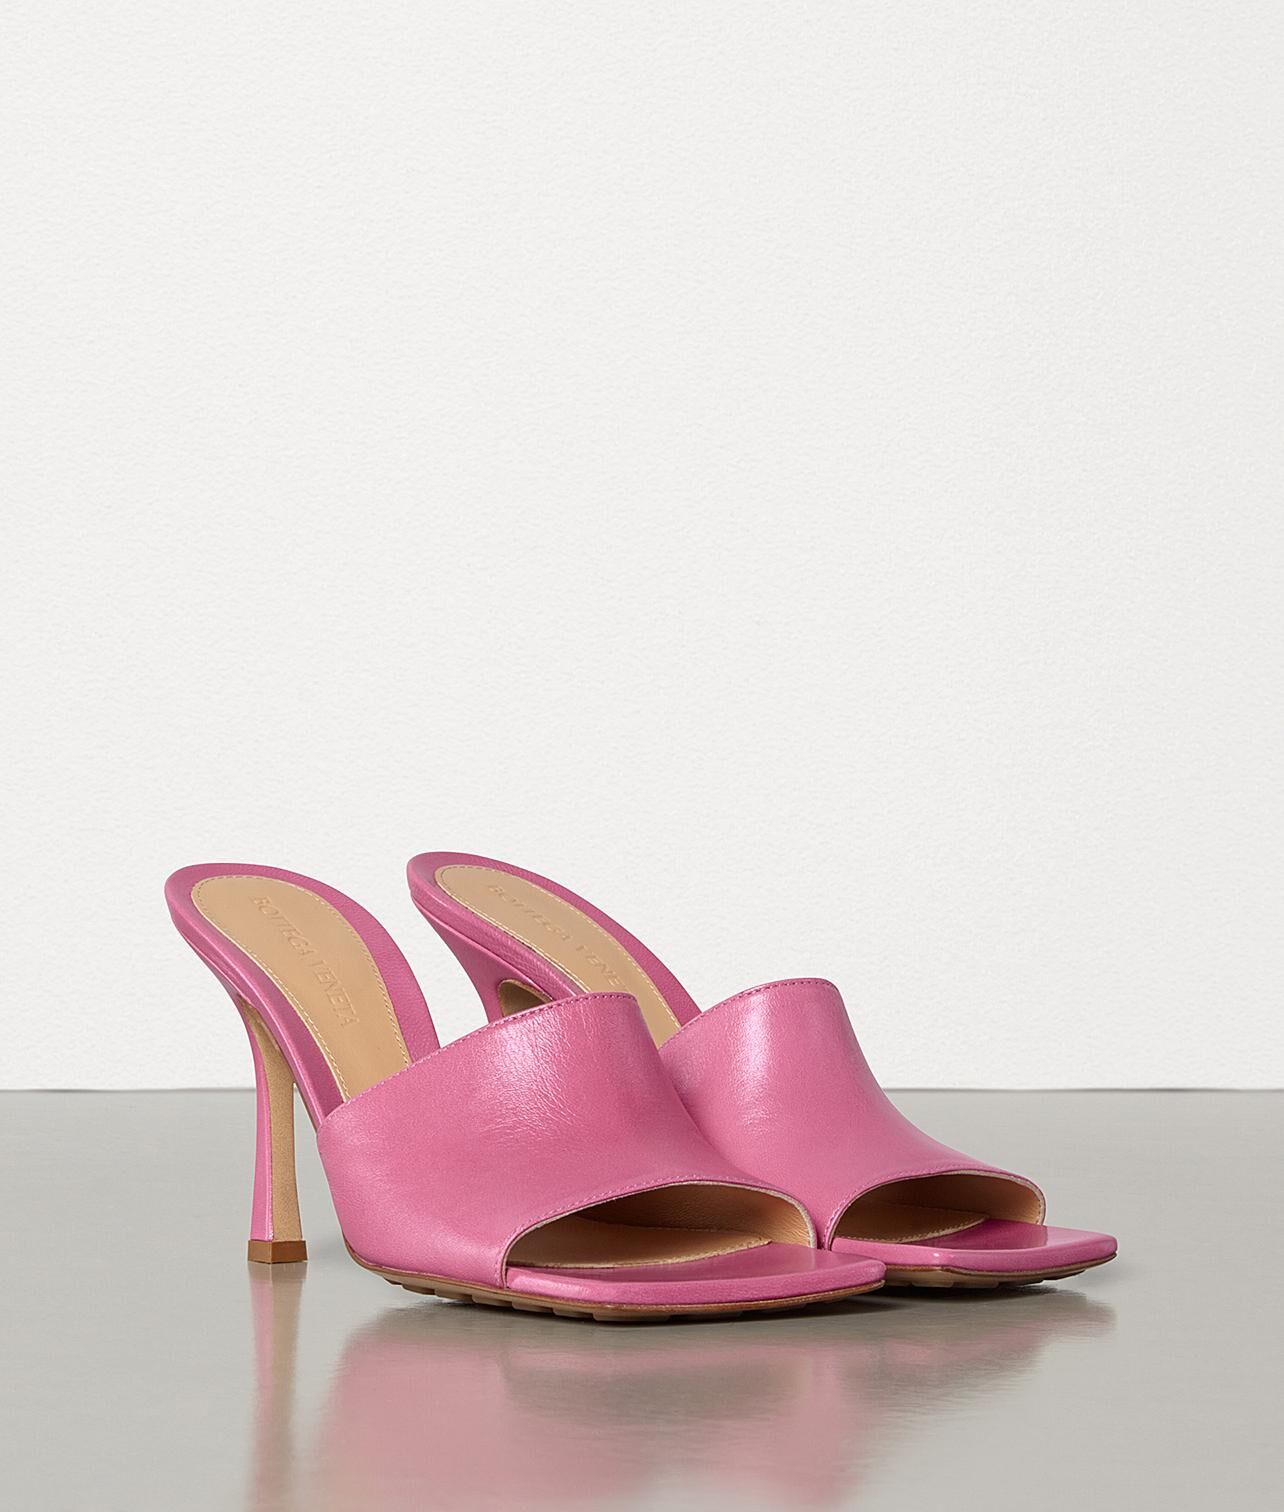 Bottega Veneta Shoes BV2048 Pink